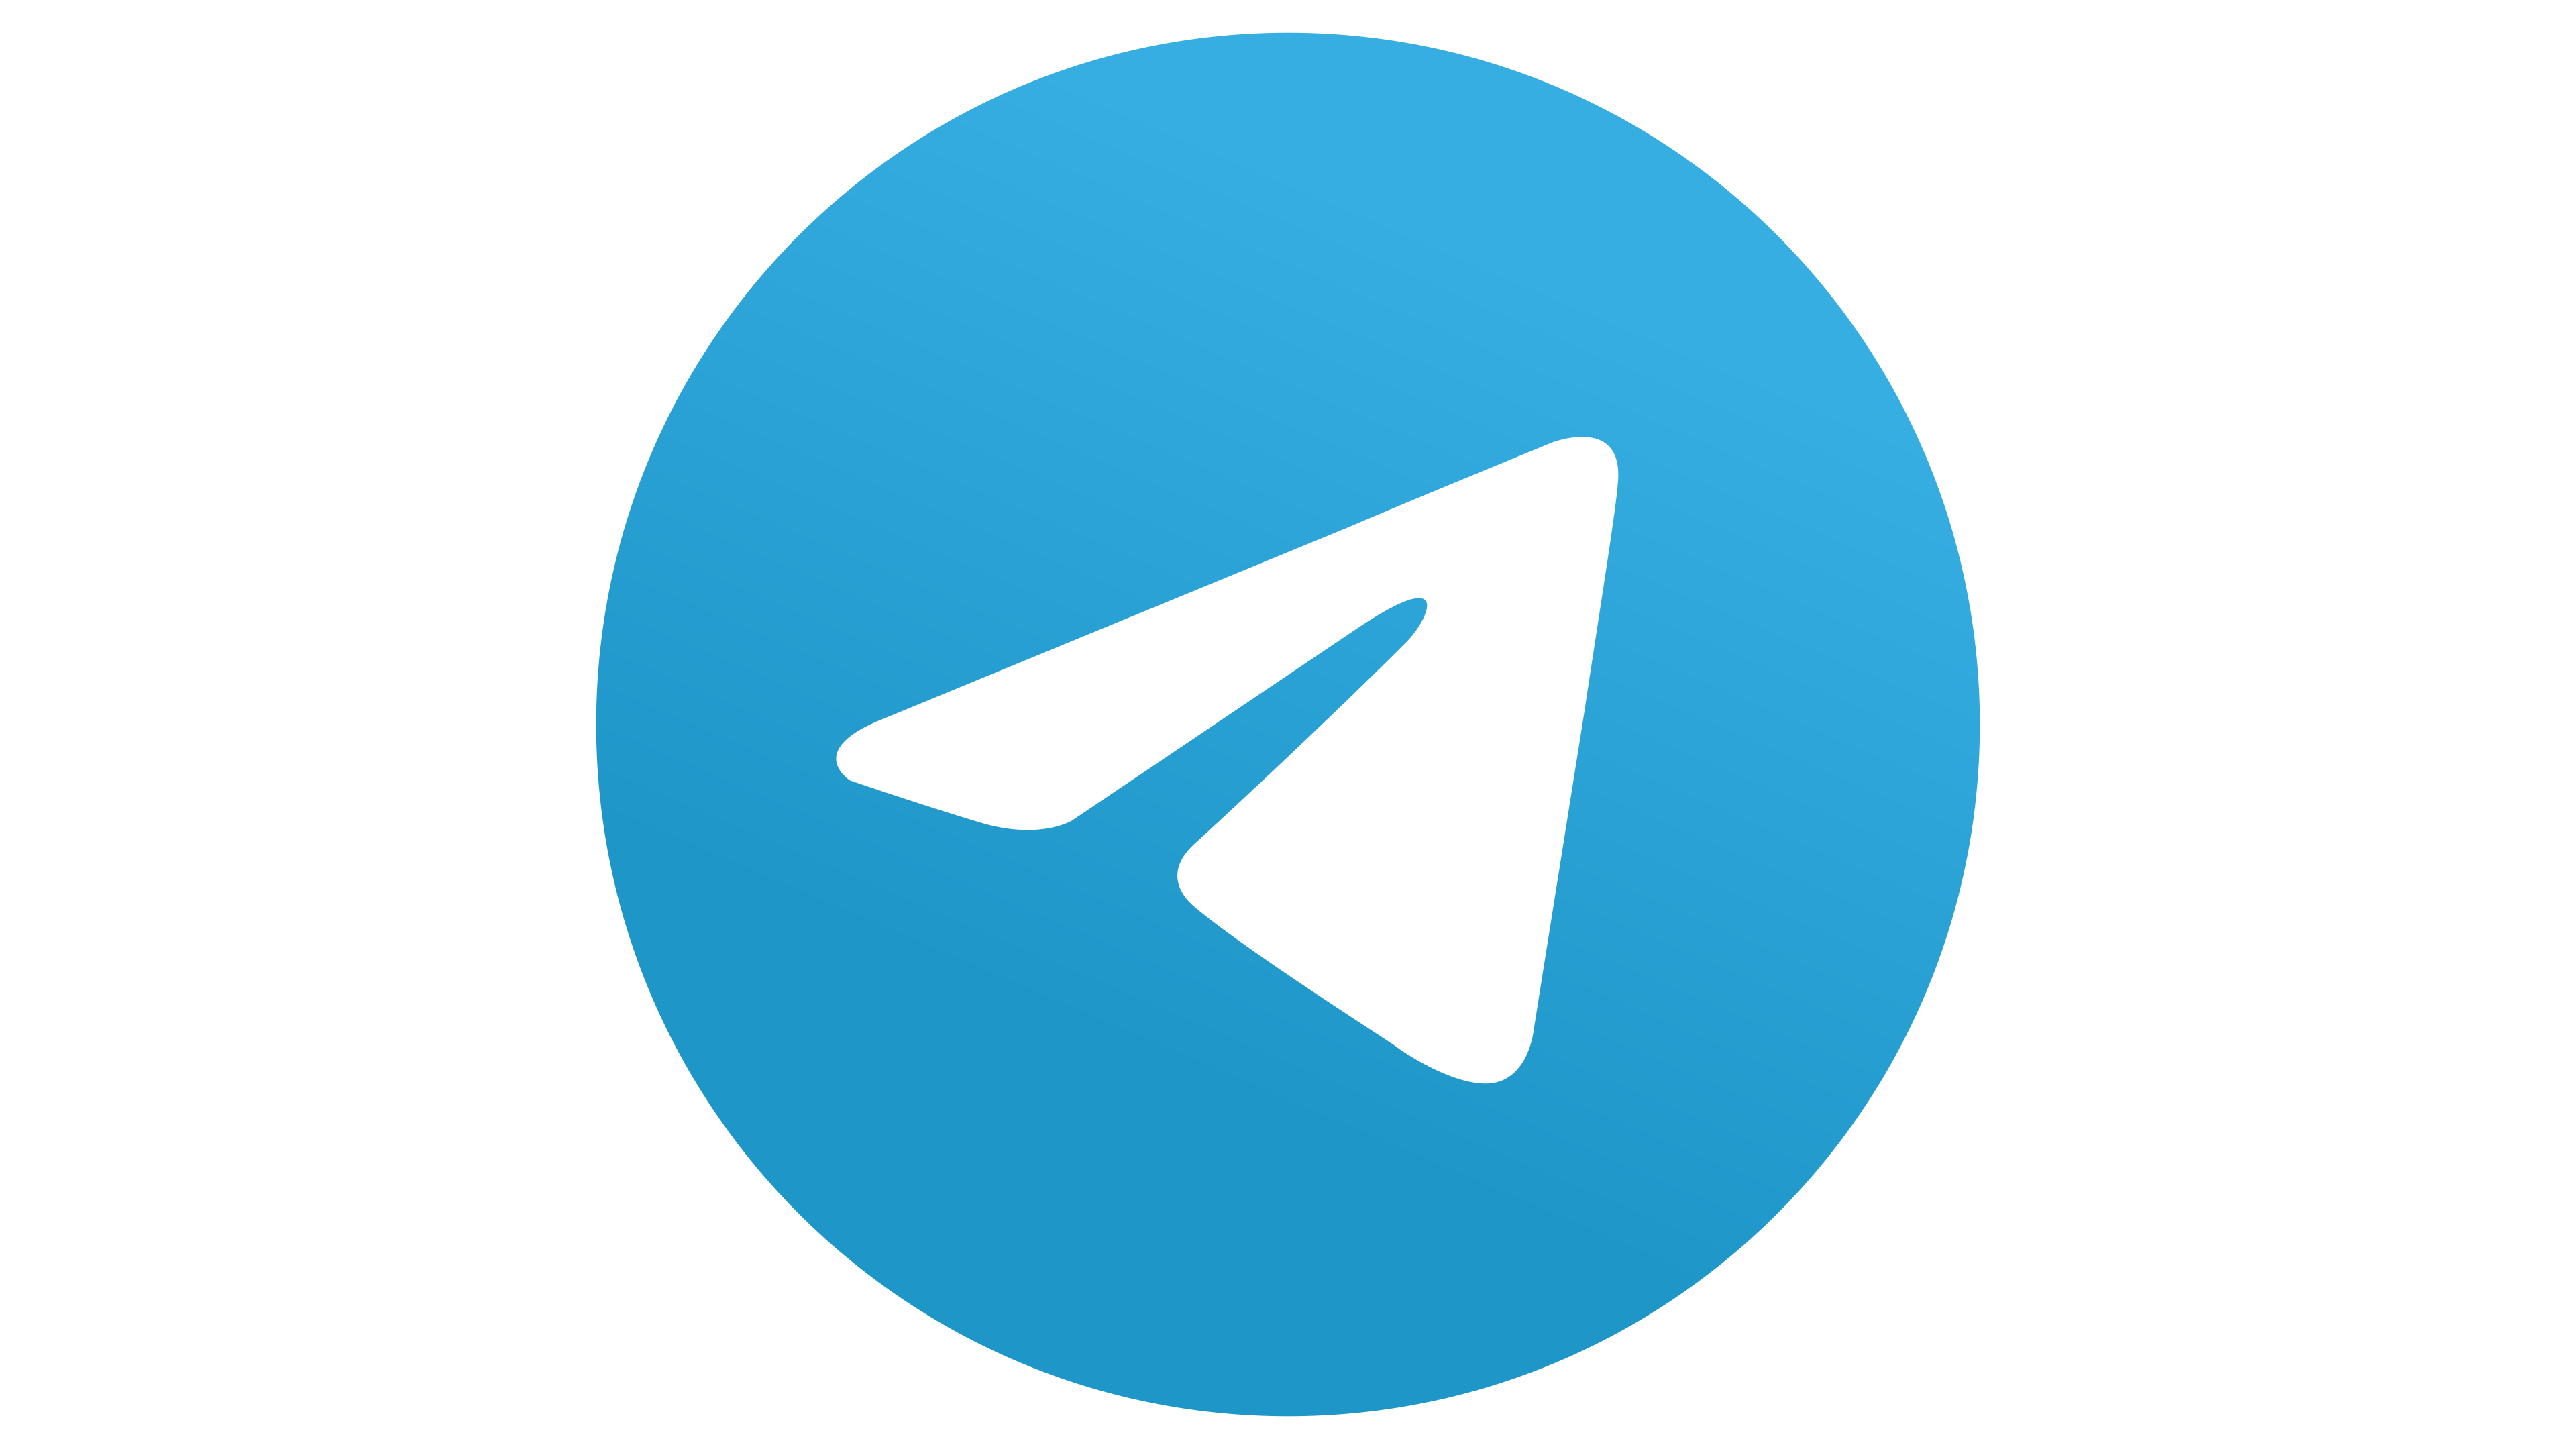 Այսօր Telegram հավելվածի աշխատանքում խափանումներ են նկատվել